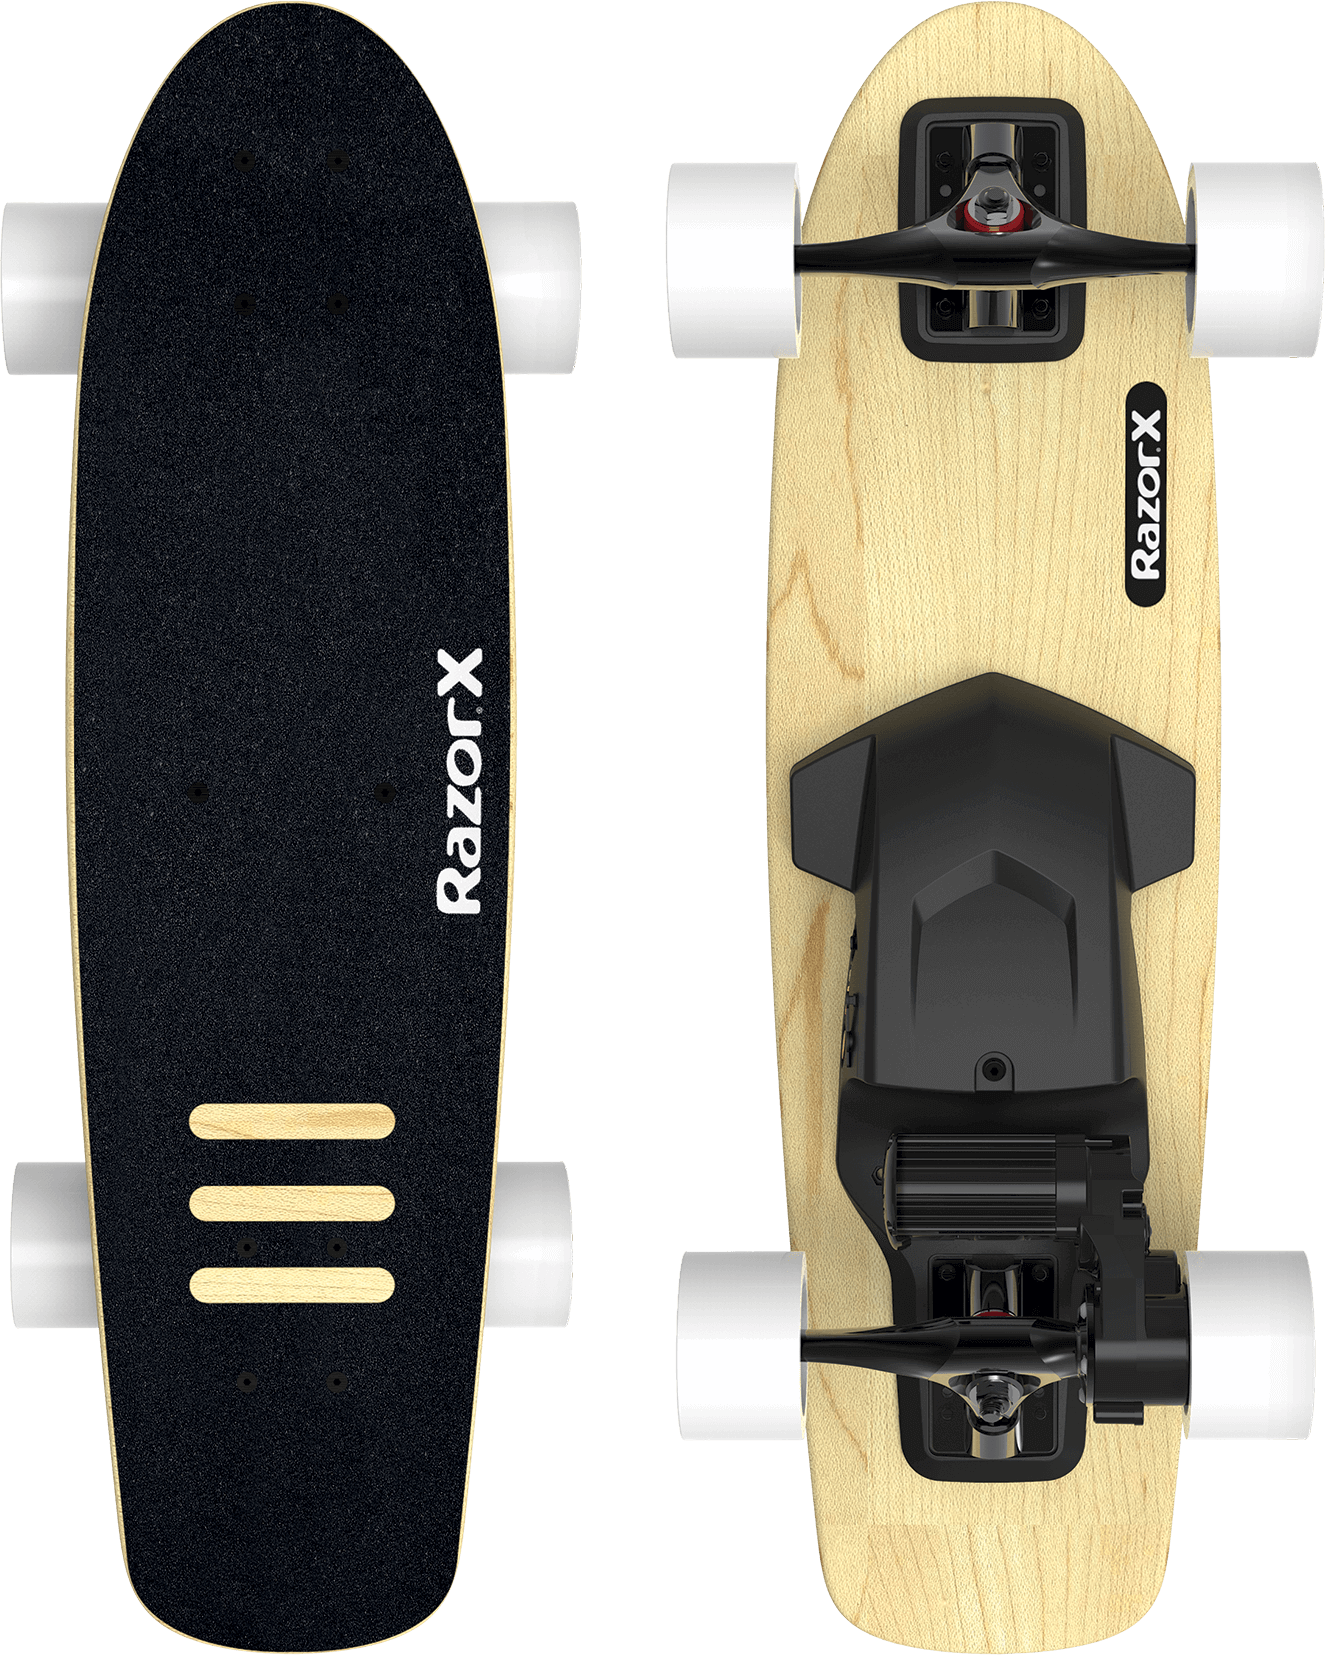 Electric Skateboards - RazorX skateboard